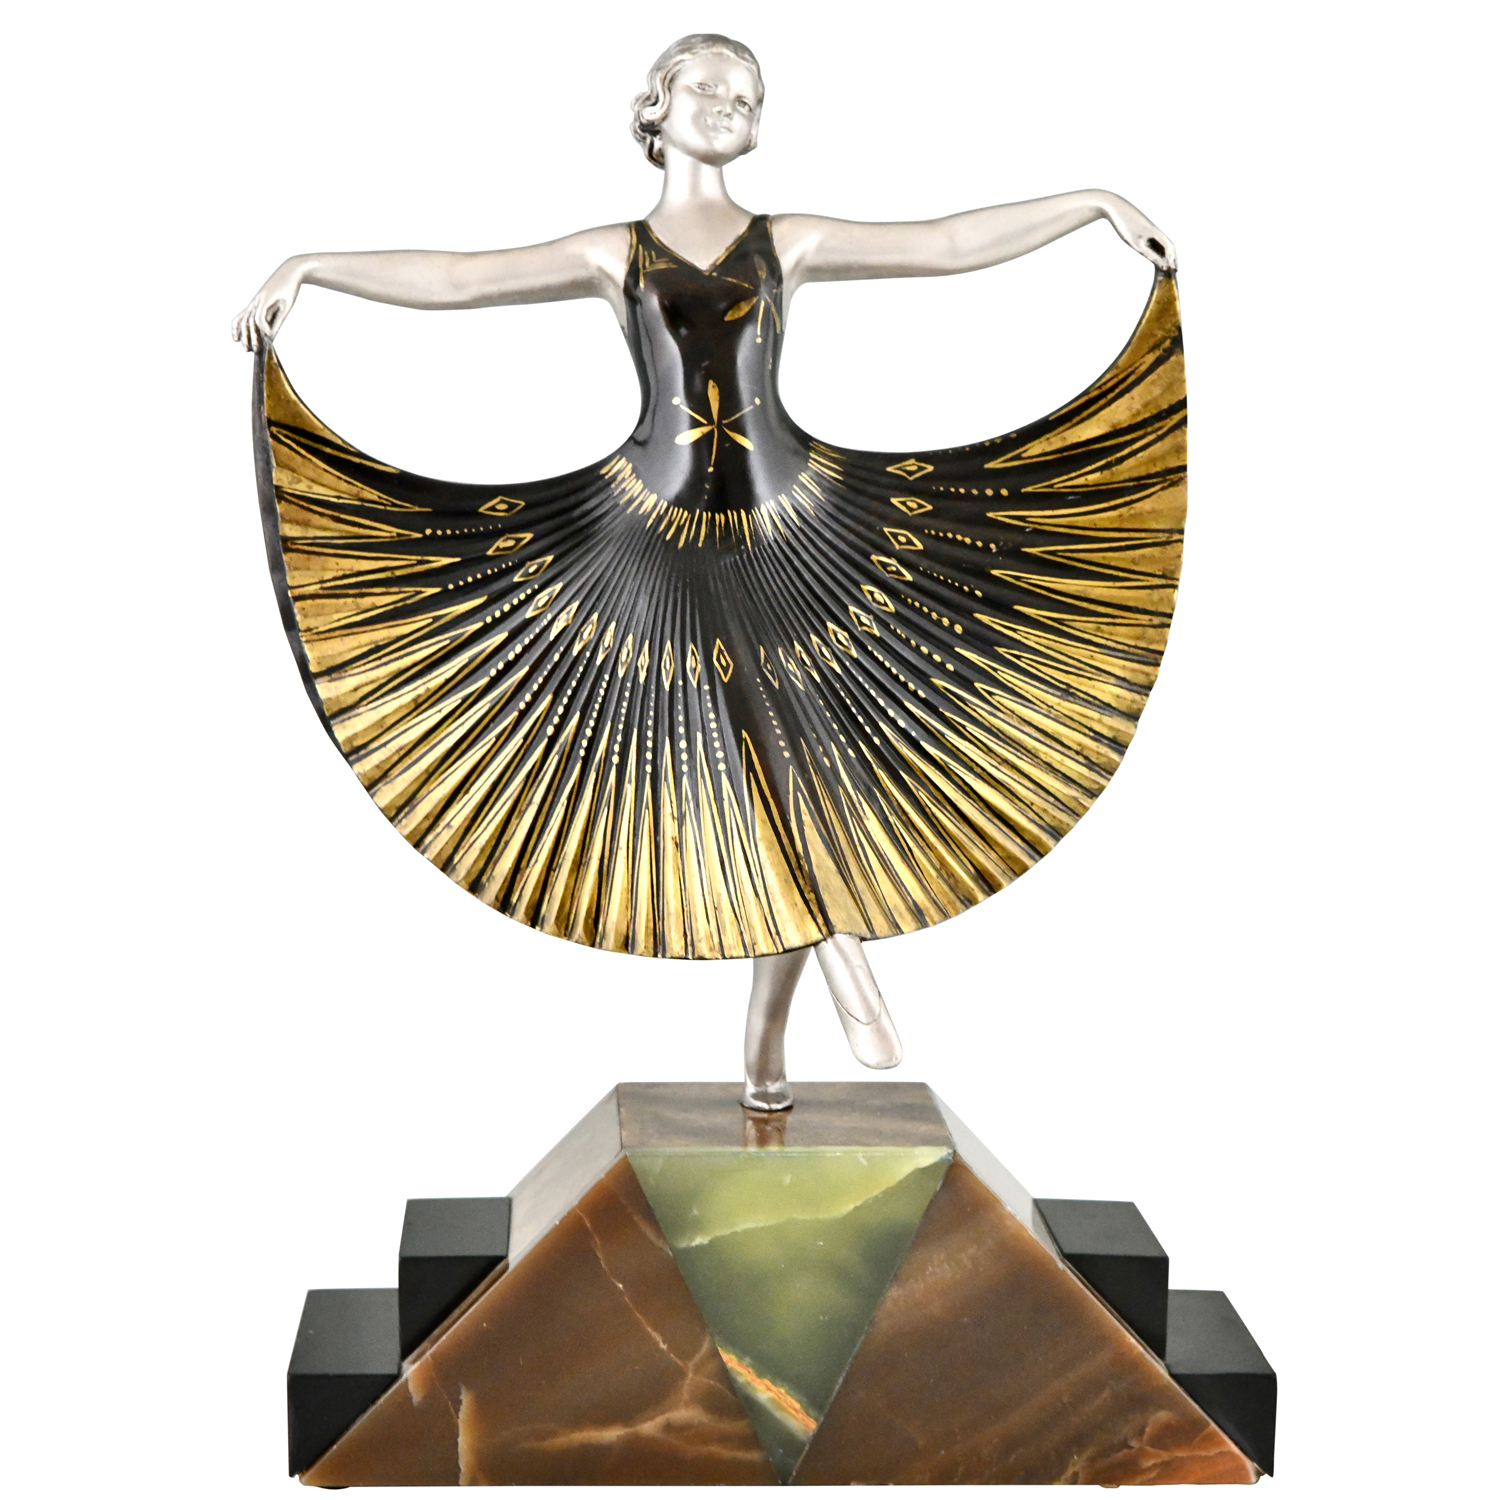 Art Deco dancer A. Gilbert - 1